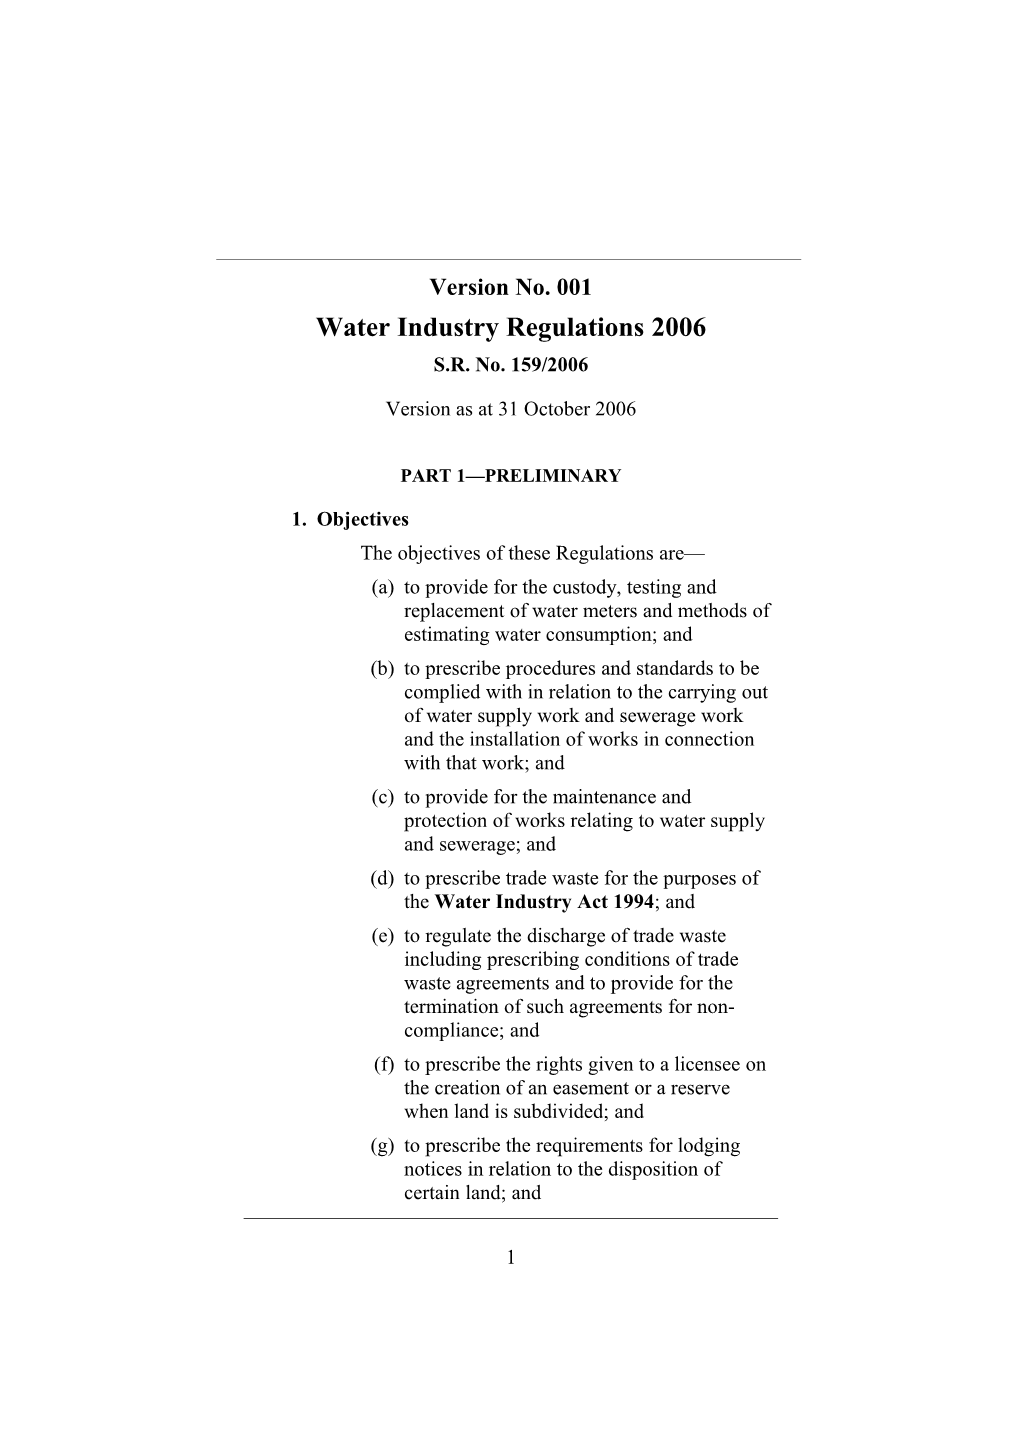 Water Industry Regulations 2006